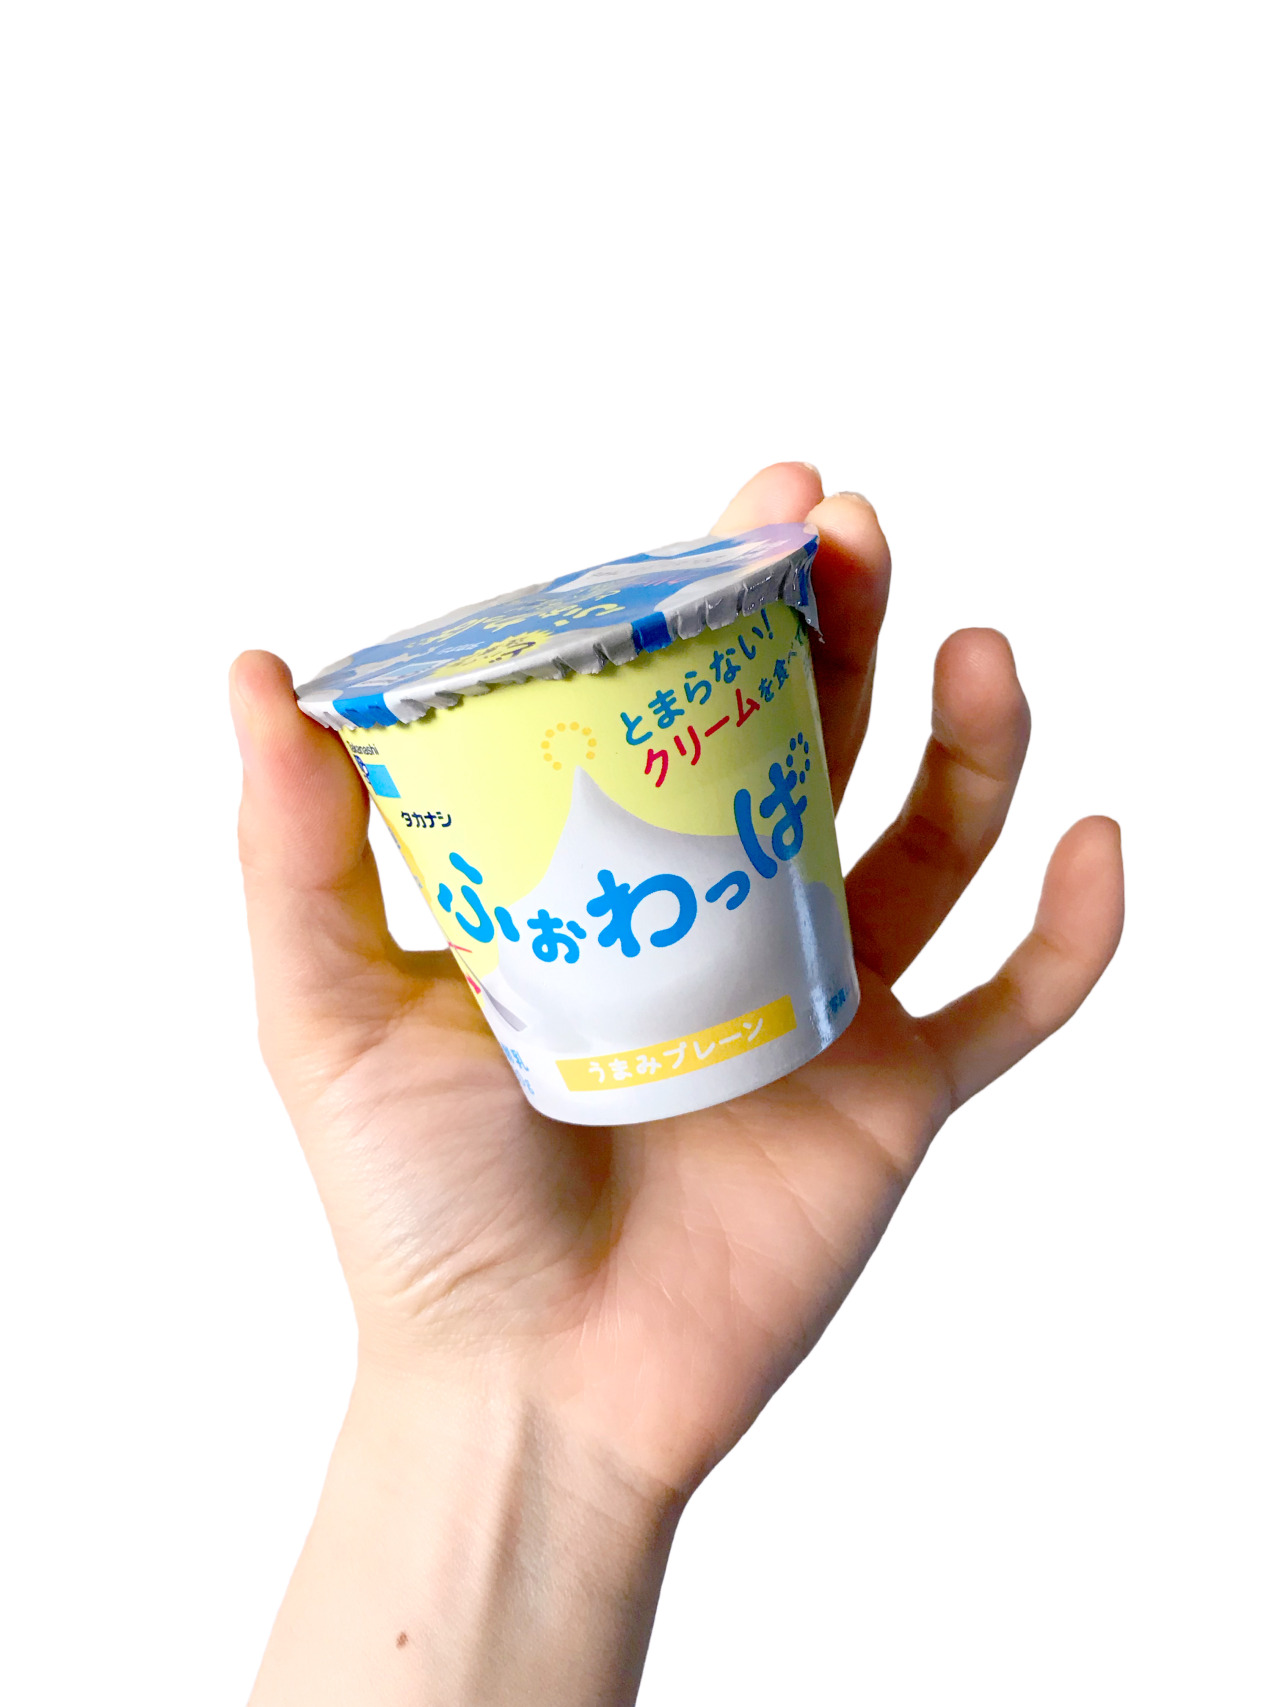 Yoghurt — ふぉわっぱ うまみプレーン なにこれー😍 ふぉわっぱ ・・・ふぉわっぱ・・・